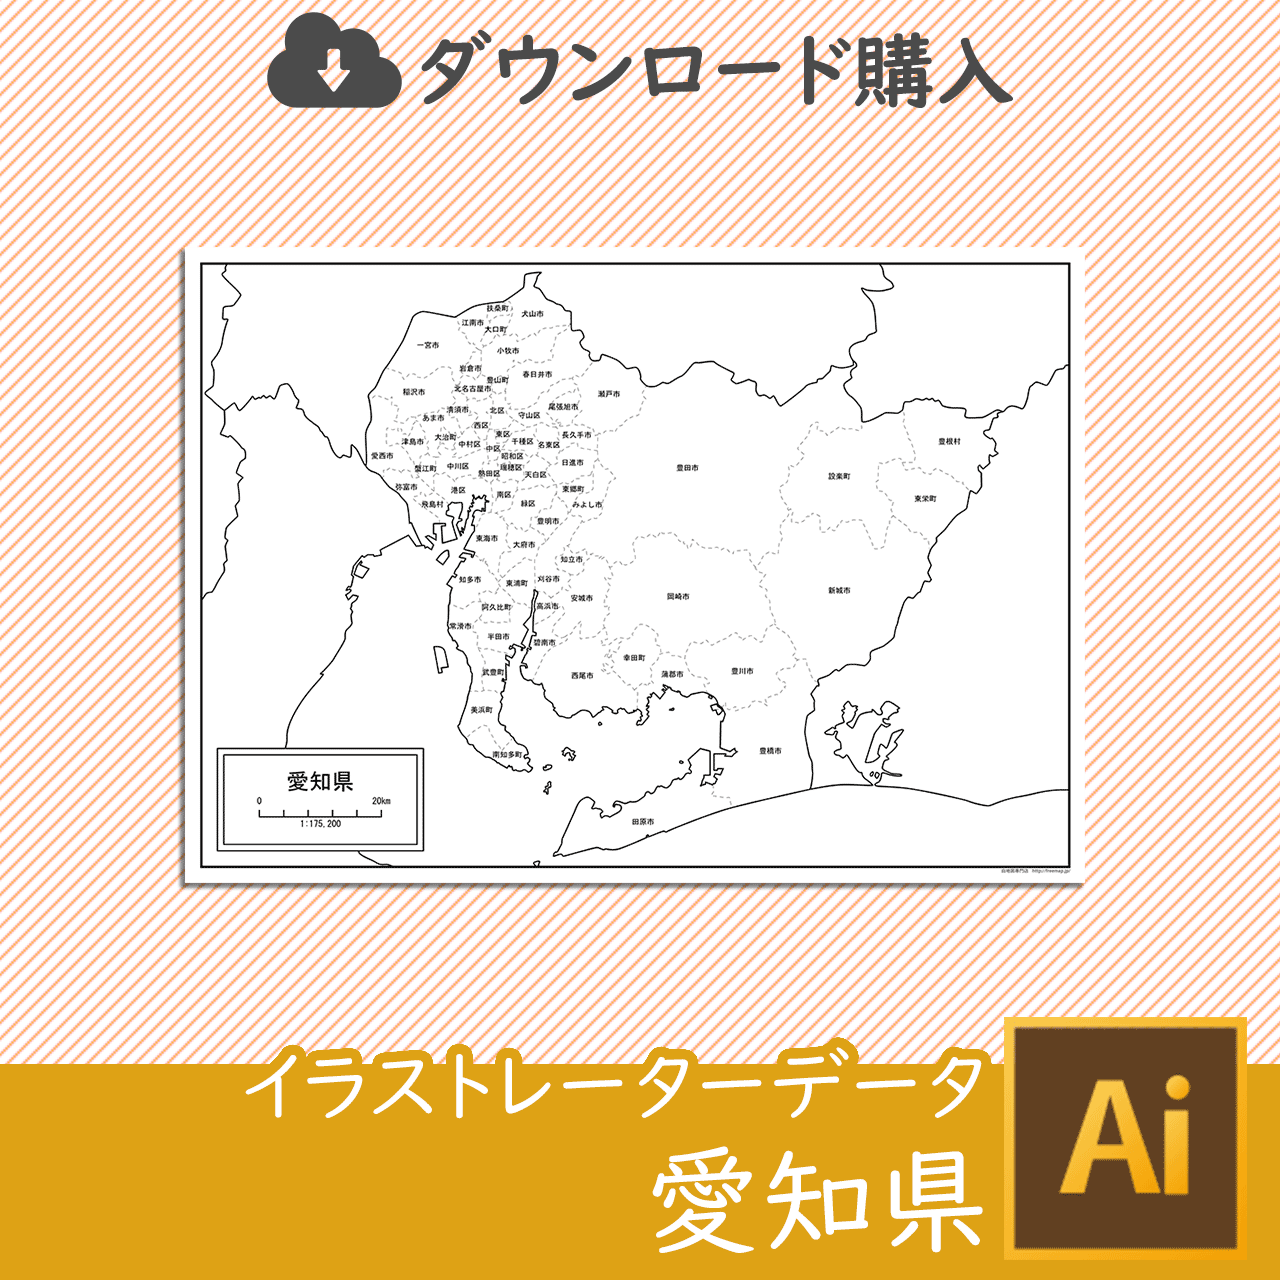 愛知県のaiデータのサムネイル画像